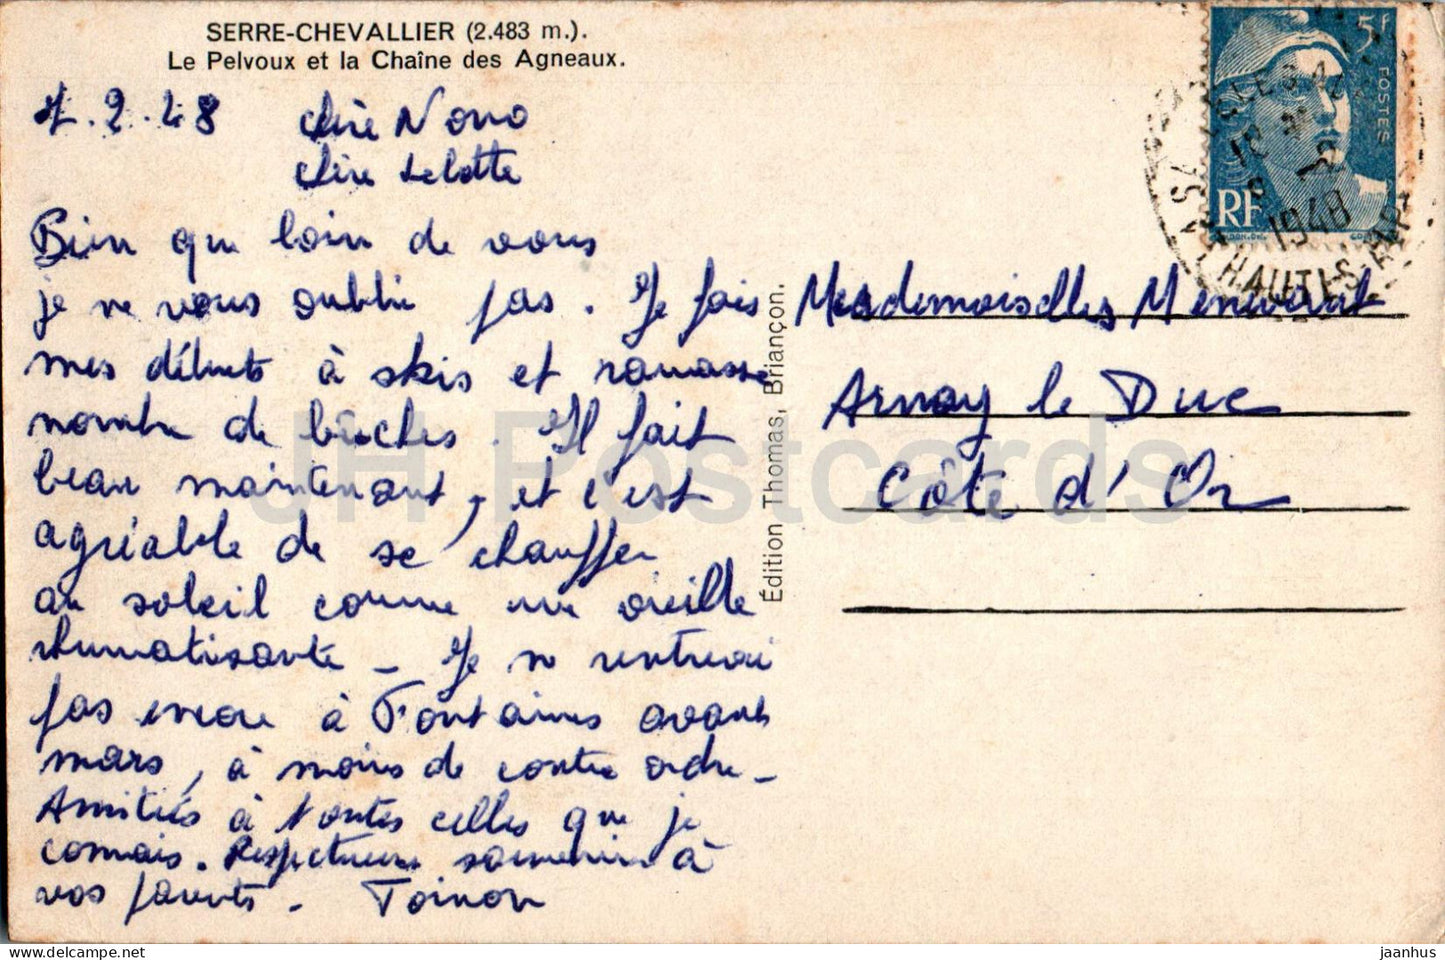 Serre Chevallier - Le Pelvoux et la Chaine des Agneaux - Berge - alte Postkarte - 1948 - Frankreich - gebraucht